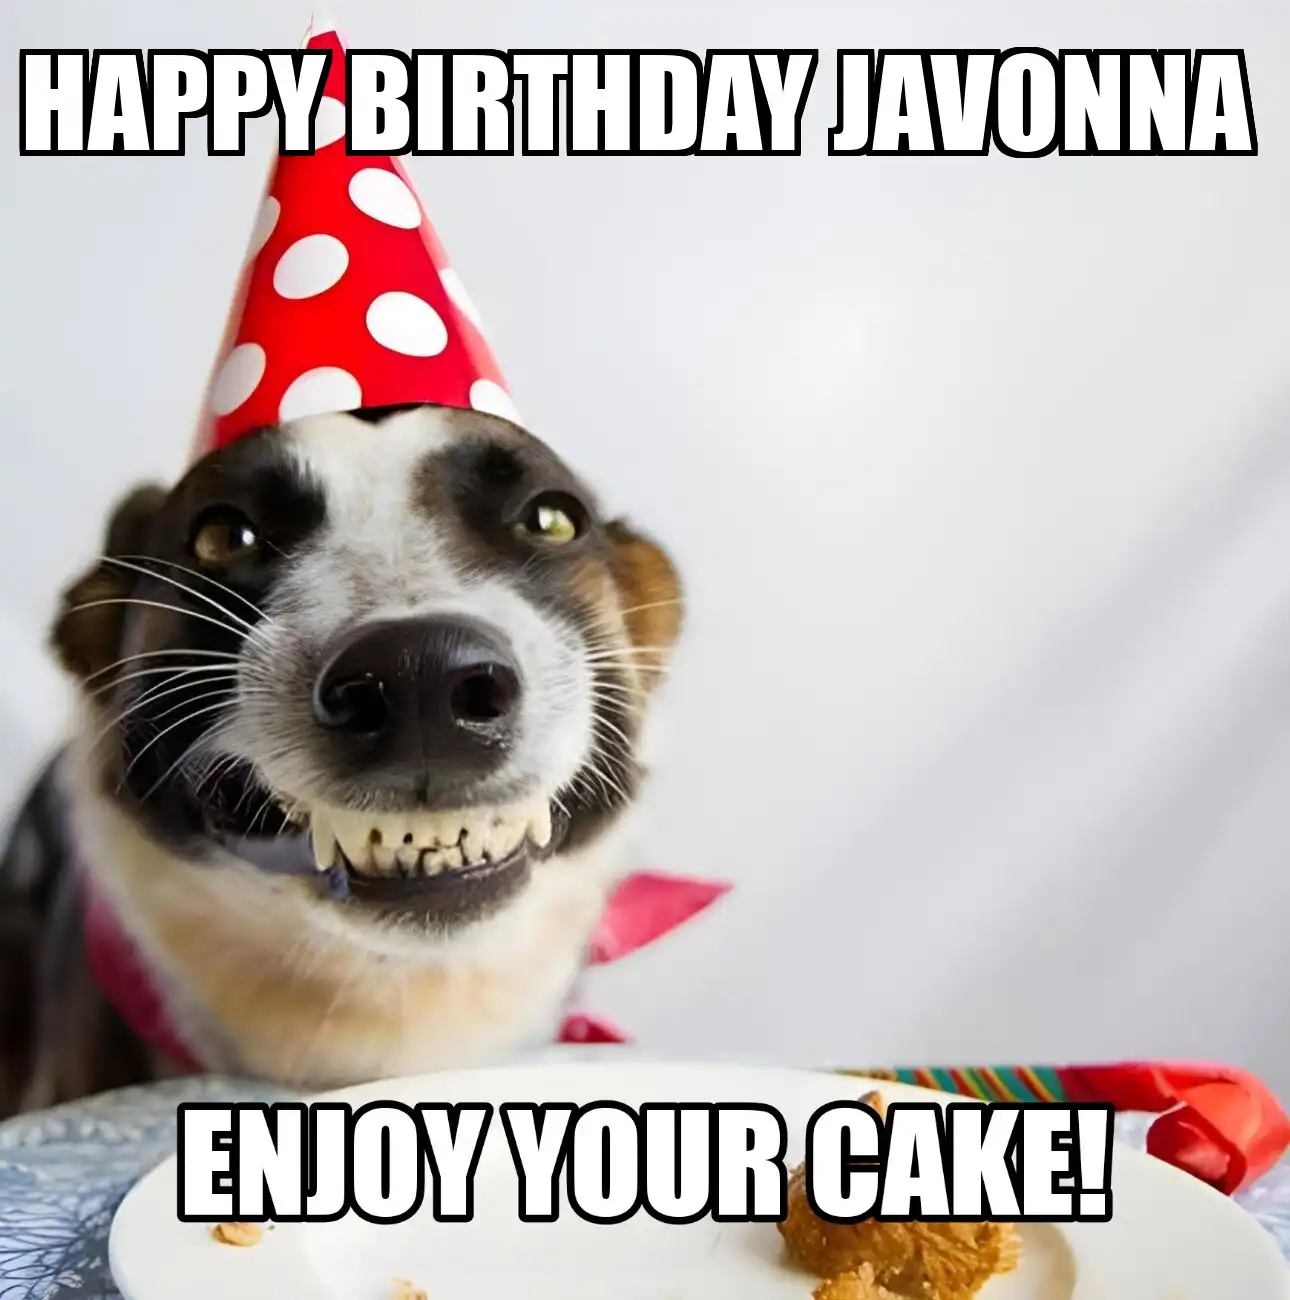 Happy Birthday Javonna Enjoy Your Cake Dog Meme